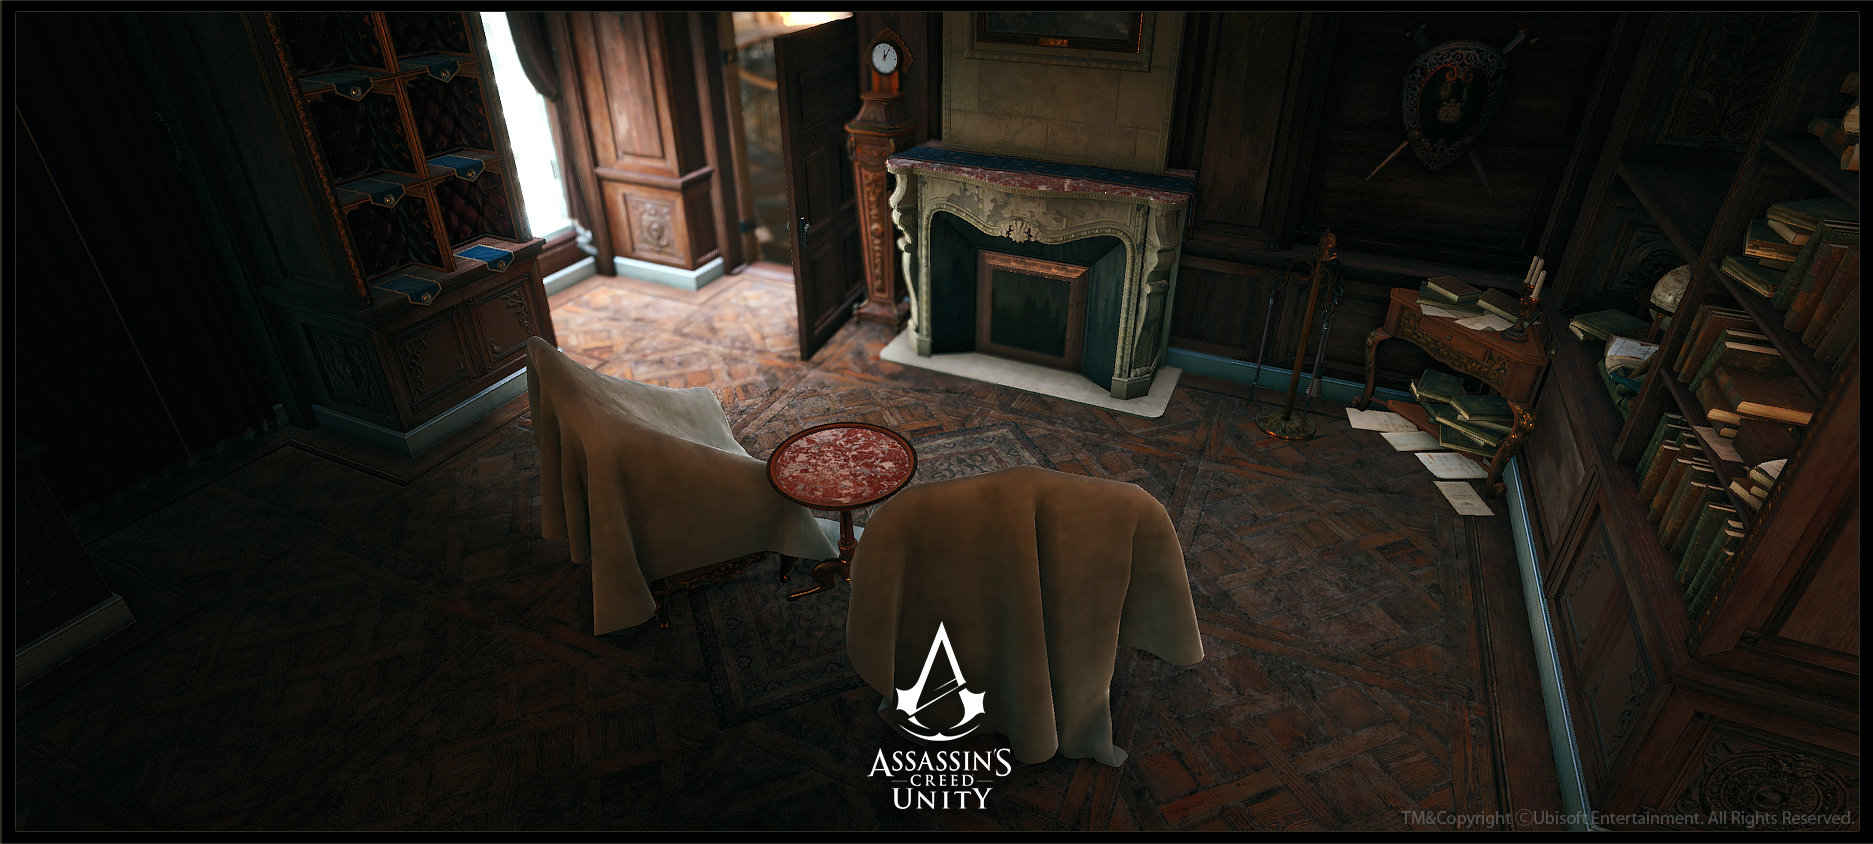 Assassin's Creed Unity - Café Théâtre, Pierre FLEAU  Assassins creed unity,  Assassins creed, Fantasy places